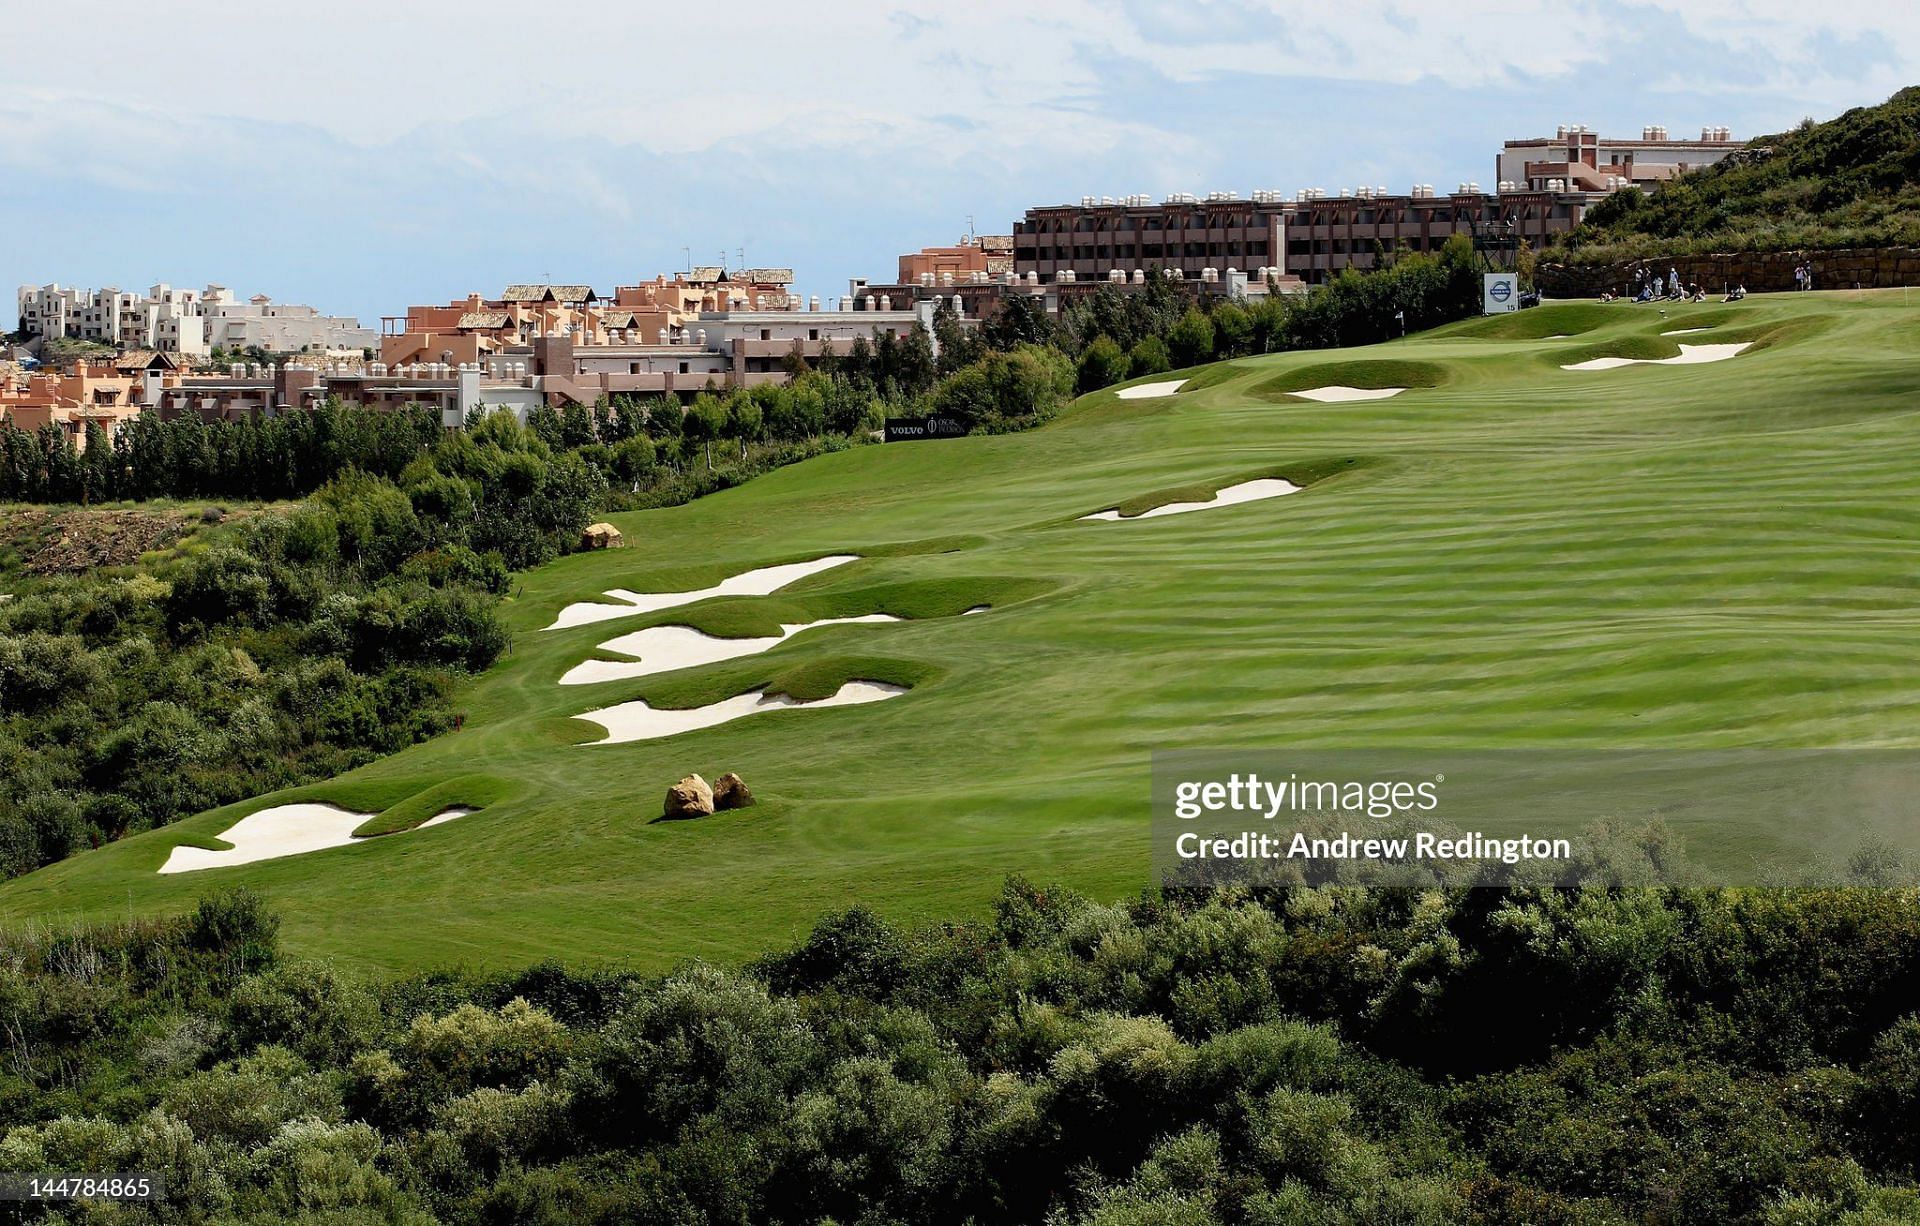 Scenic View of the Finca Cortesin Golf Course (Image via Getty)